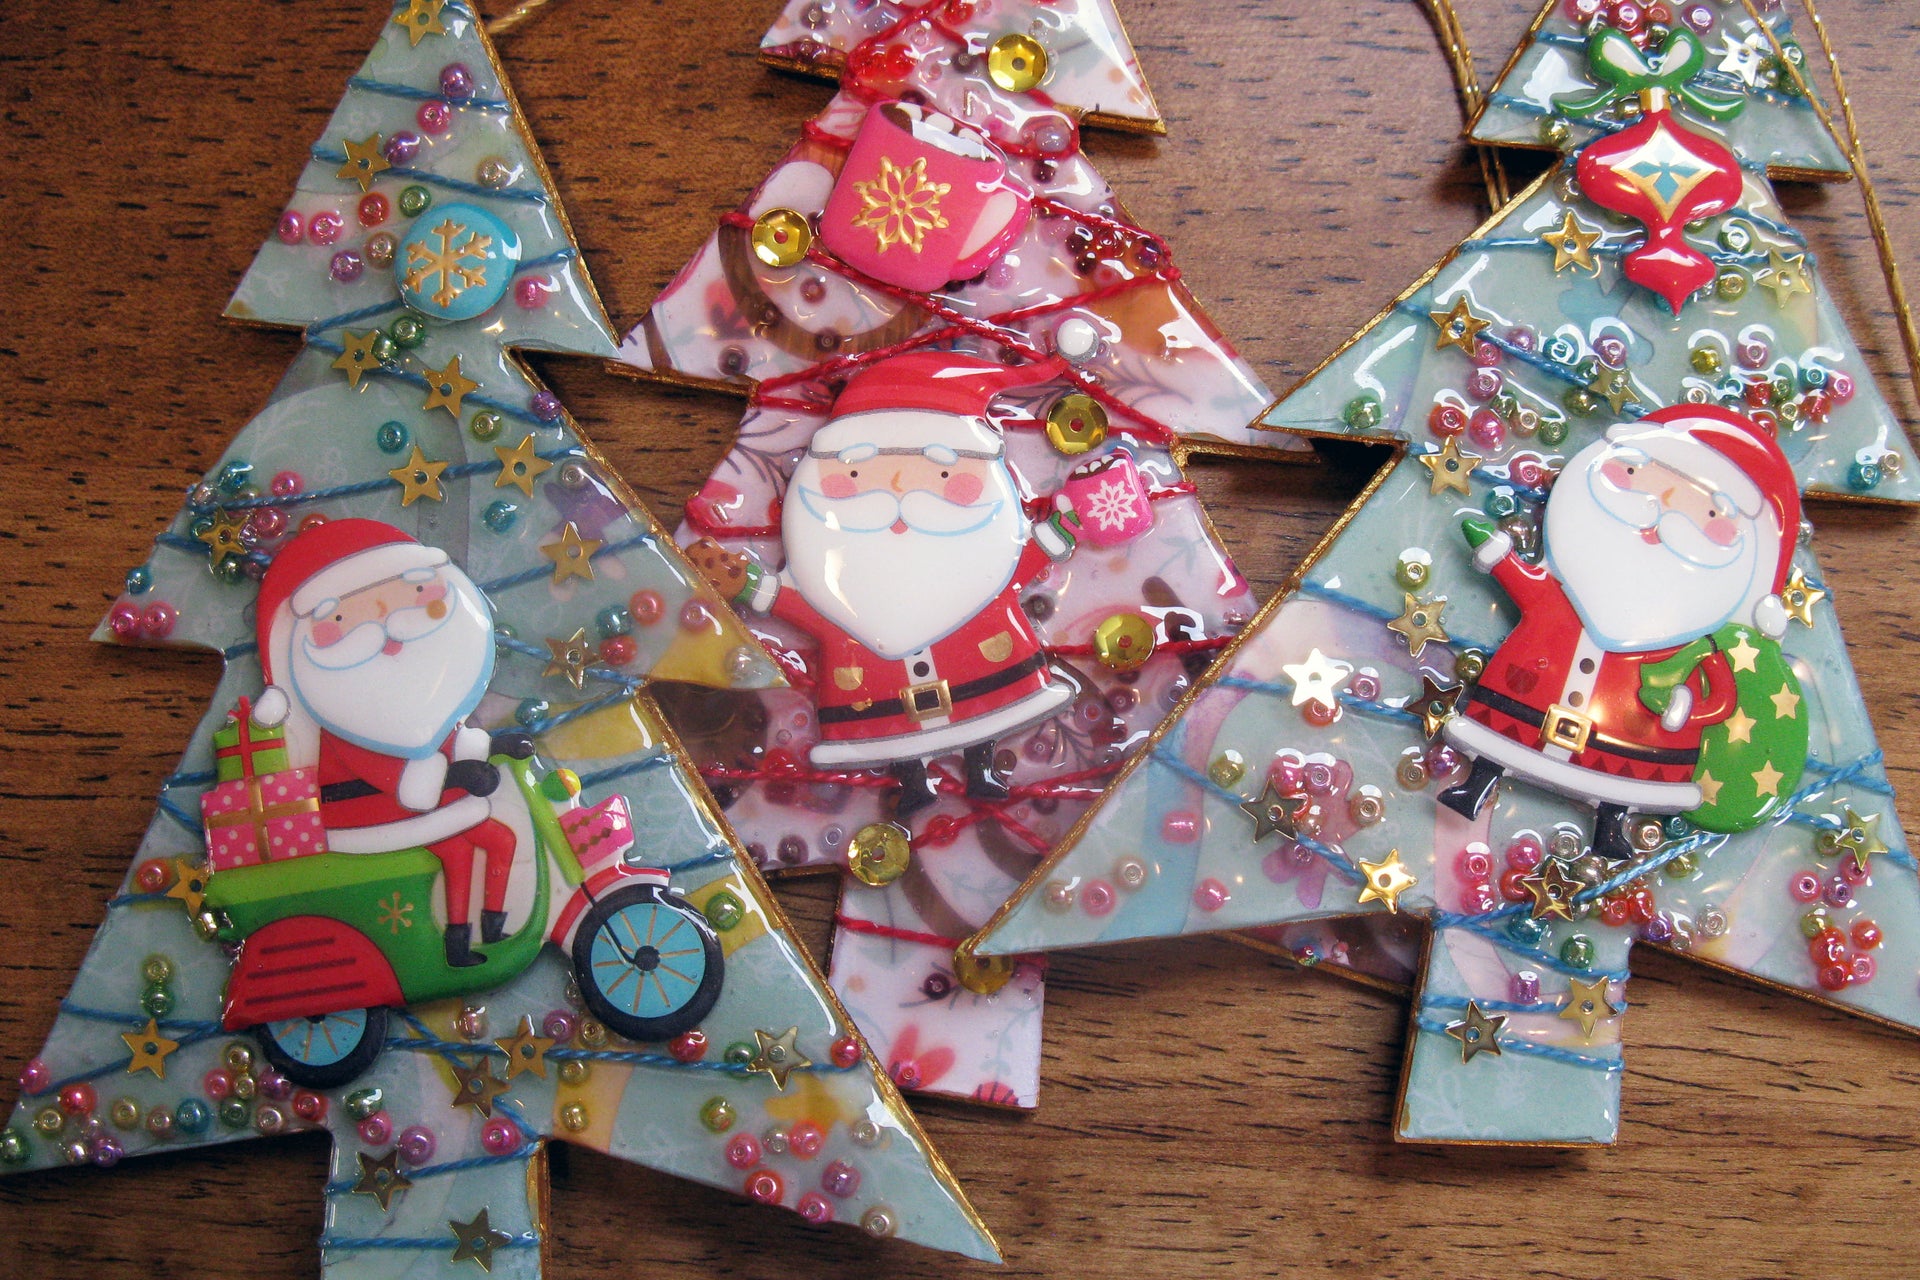 Mixed Media Paper Tree Ornaments Using Cricut